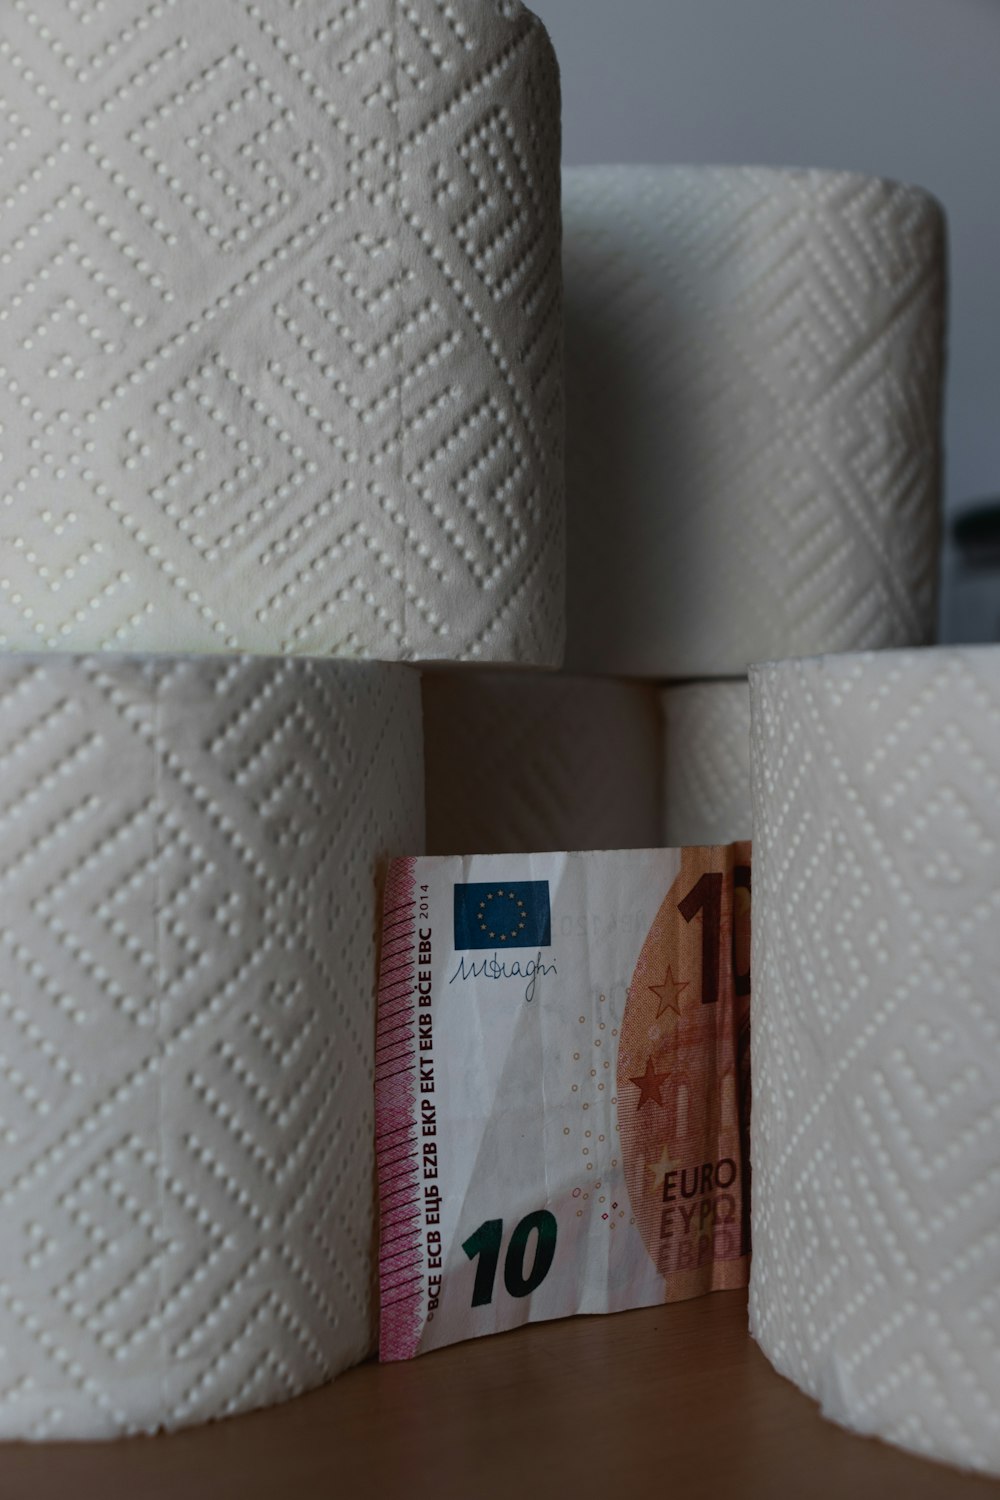 10 euro on white tissue paper